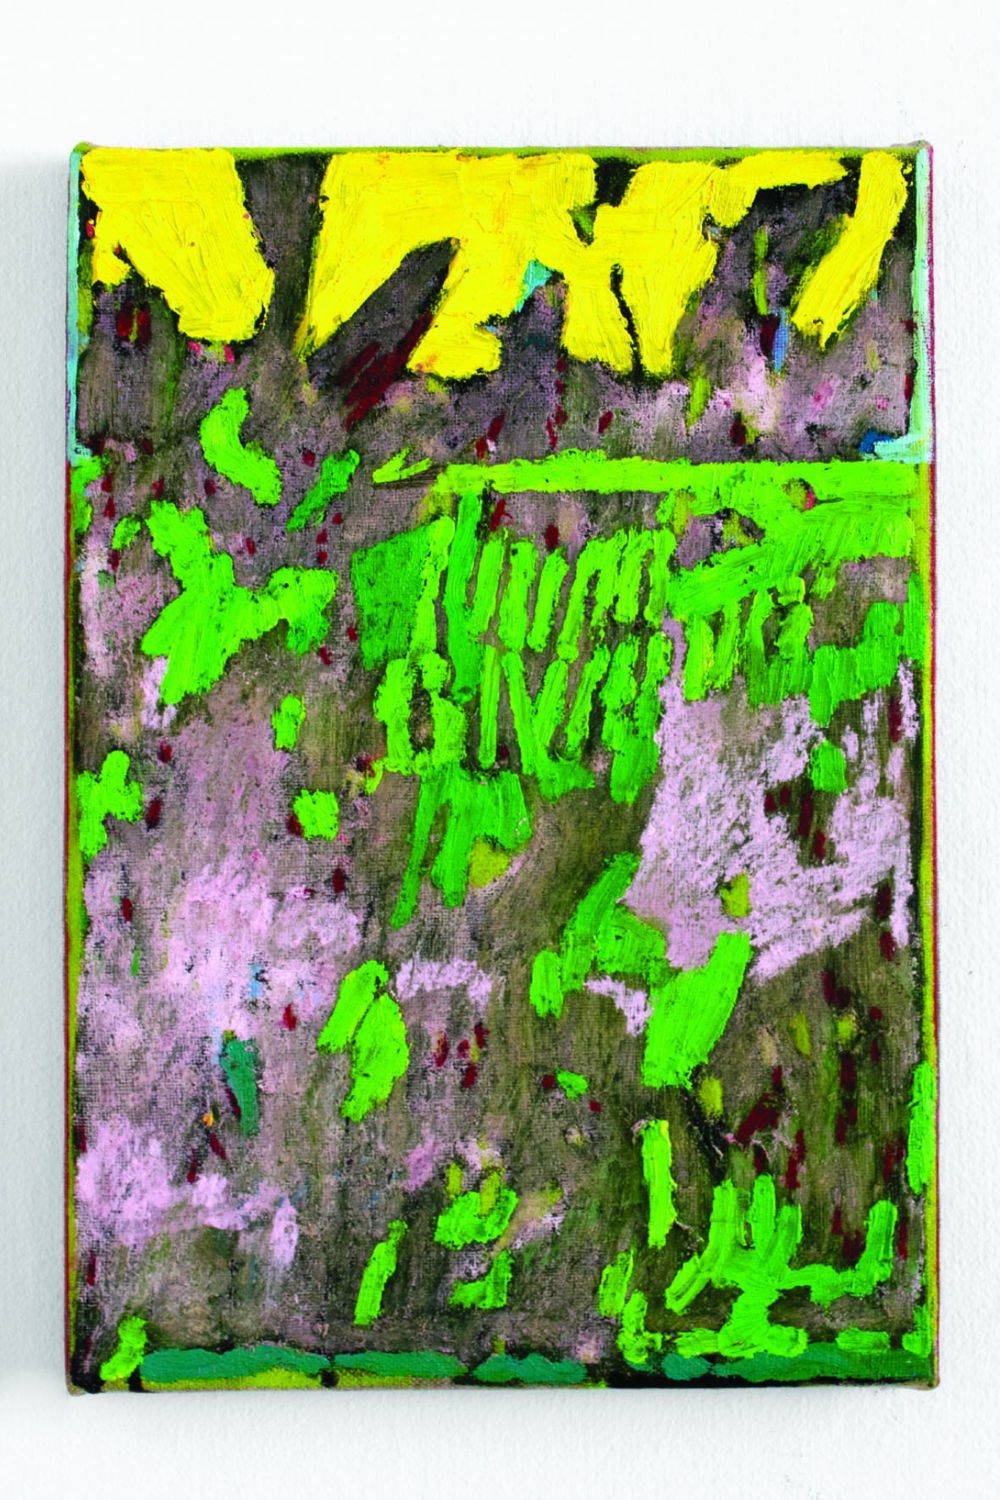 Svelte Thijs, Achter de voederbak in de Molenlei, 35 X 24, olieverf ,pastel op doek, 202O 2020